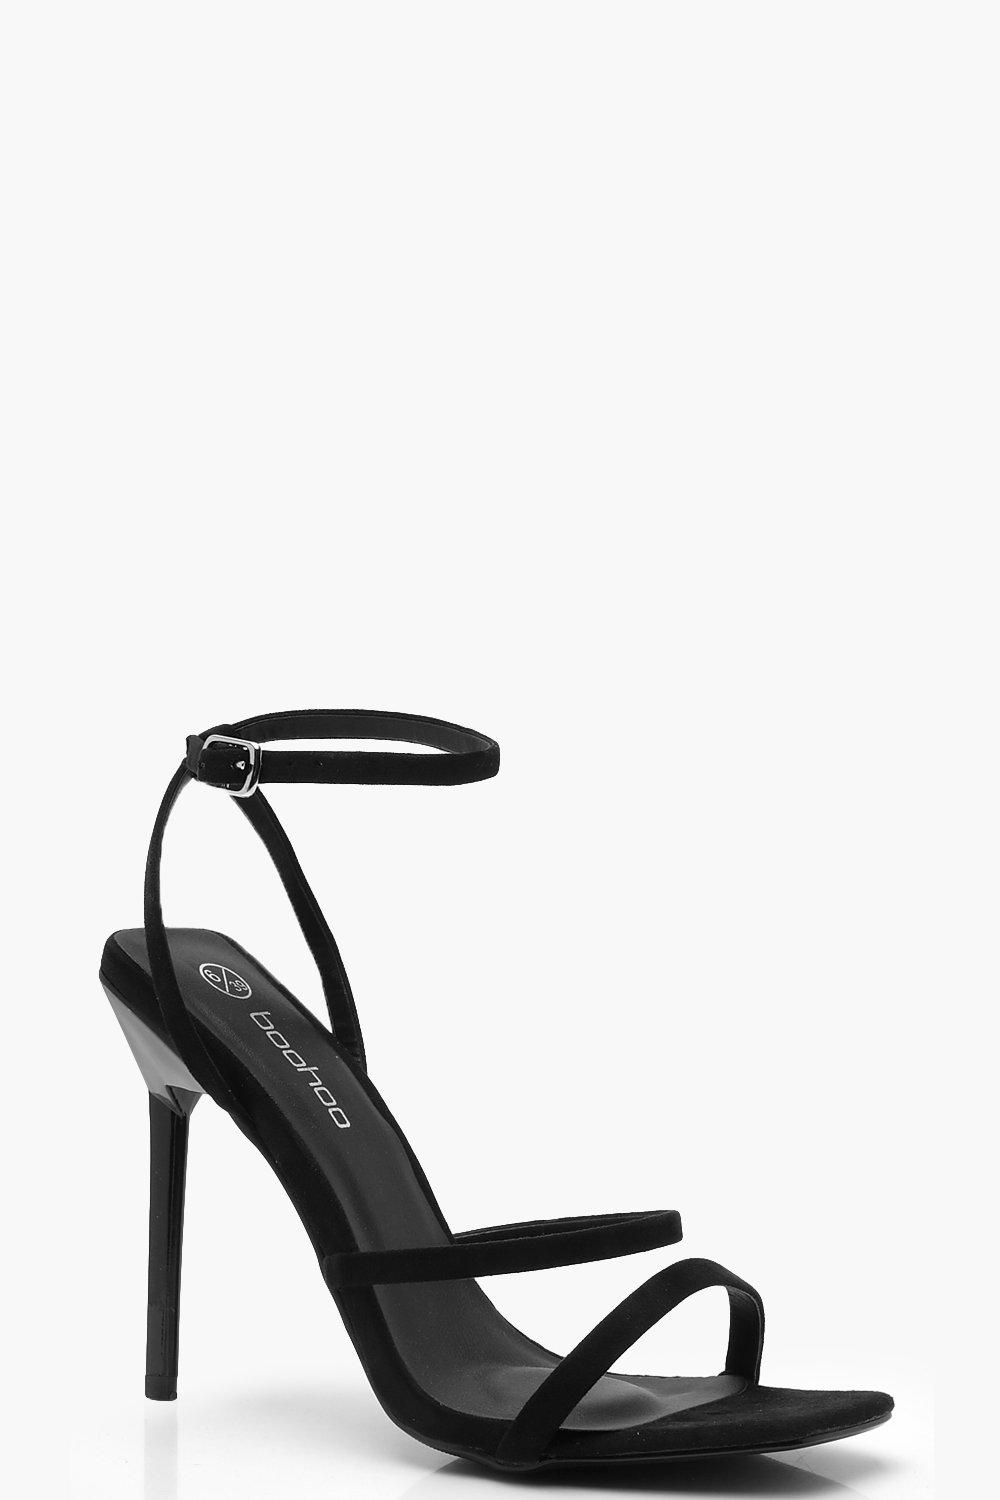 black strappy heels canada